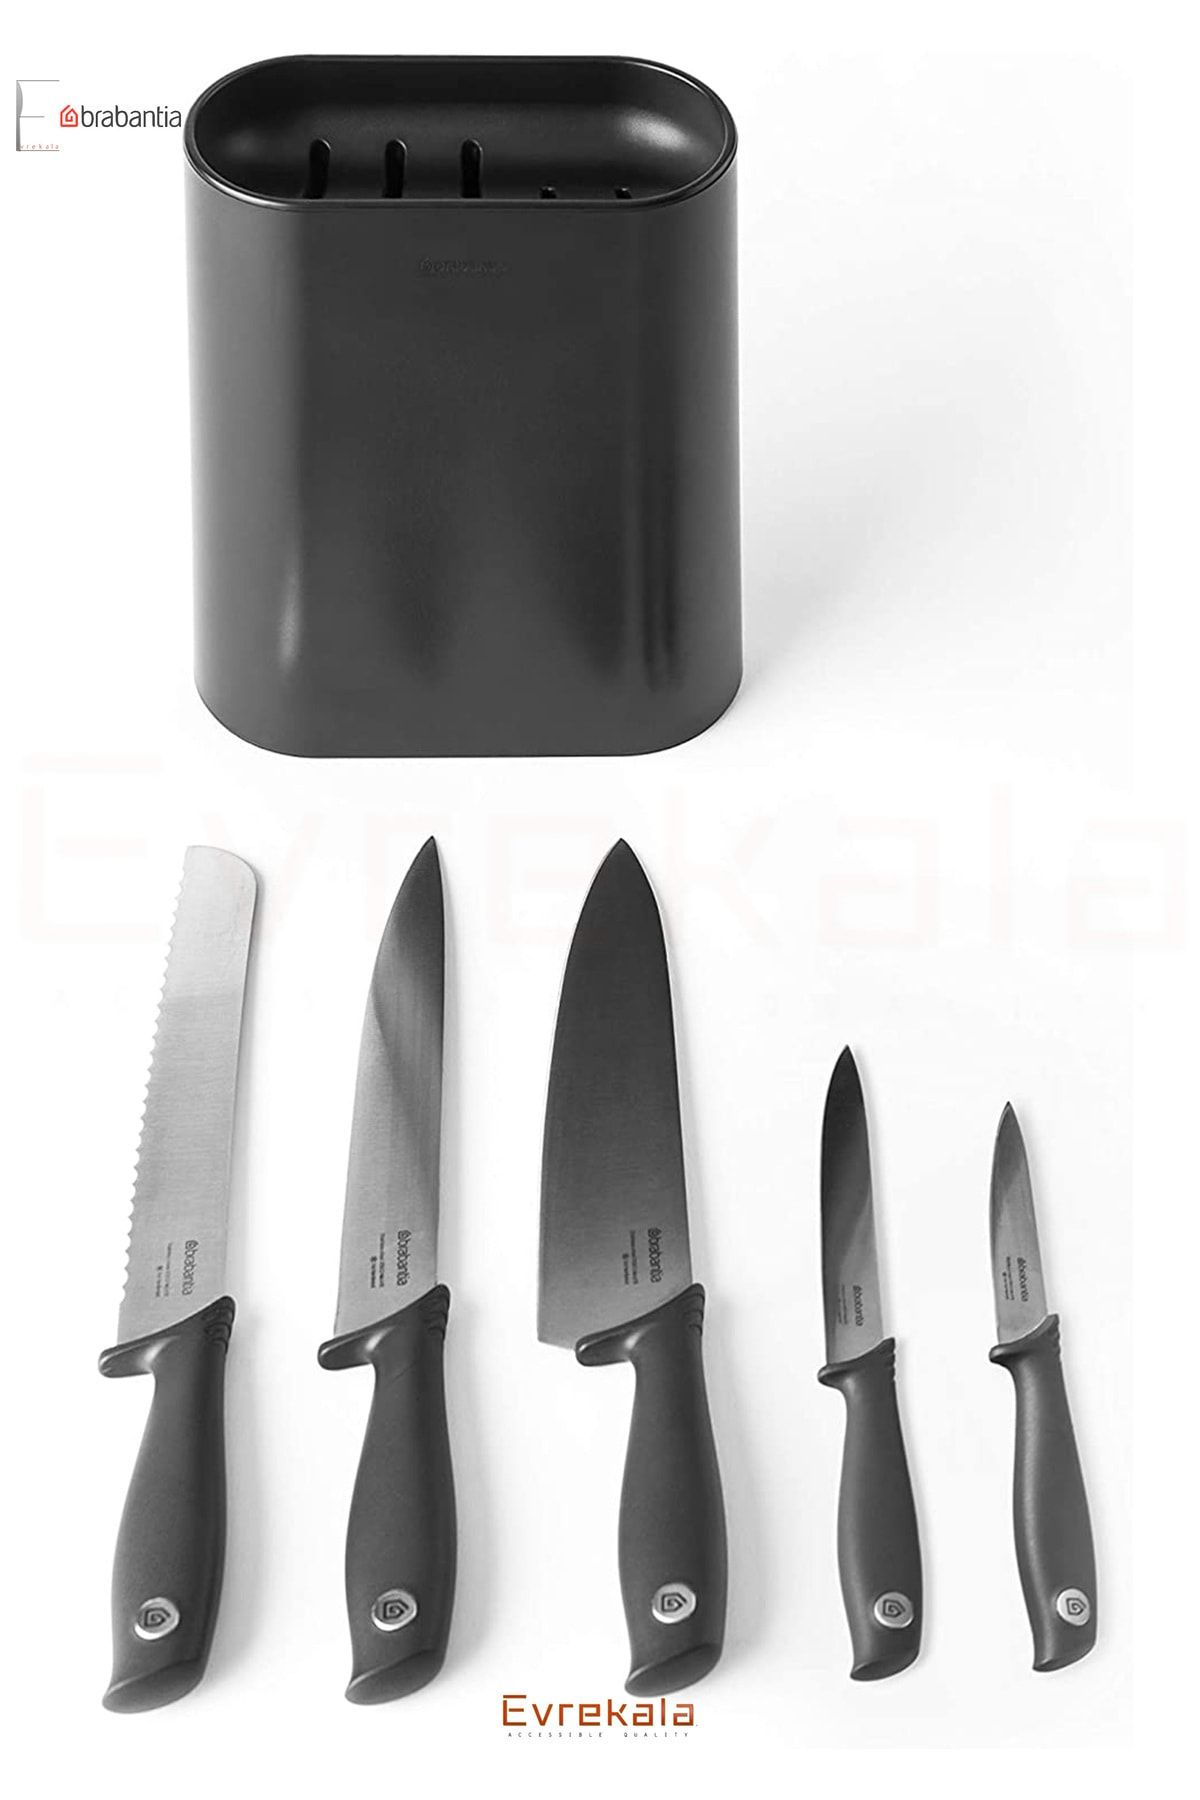 Brabantıa Evrekala Shop Siyah Bıçak Seti Brabantia New Black Knife Set